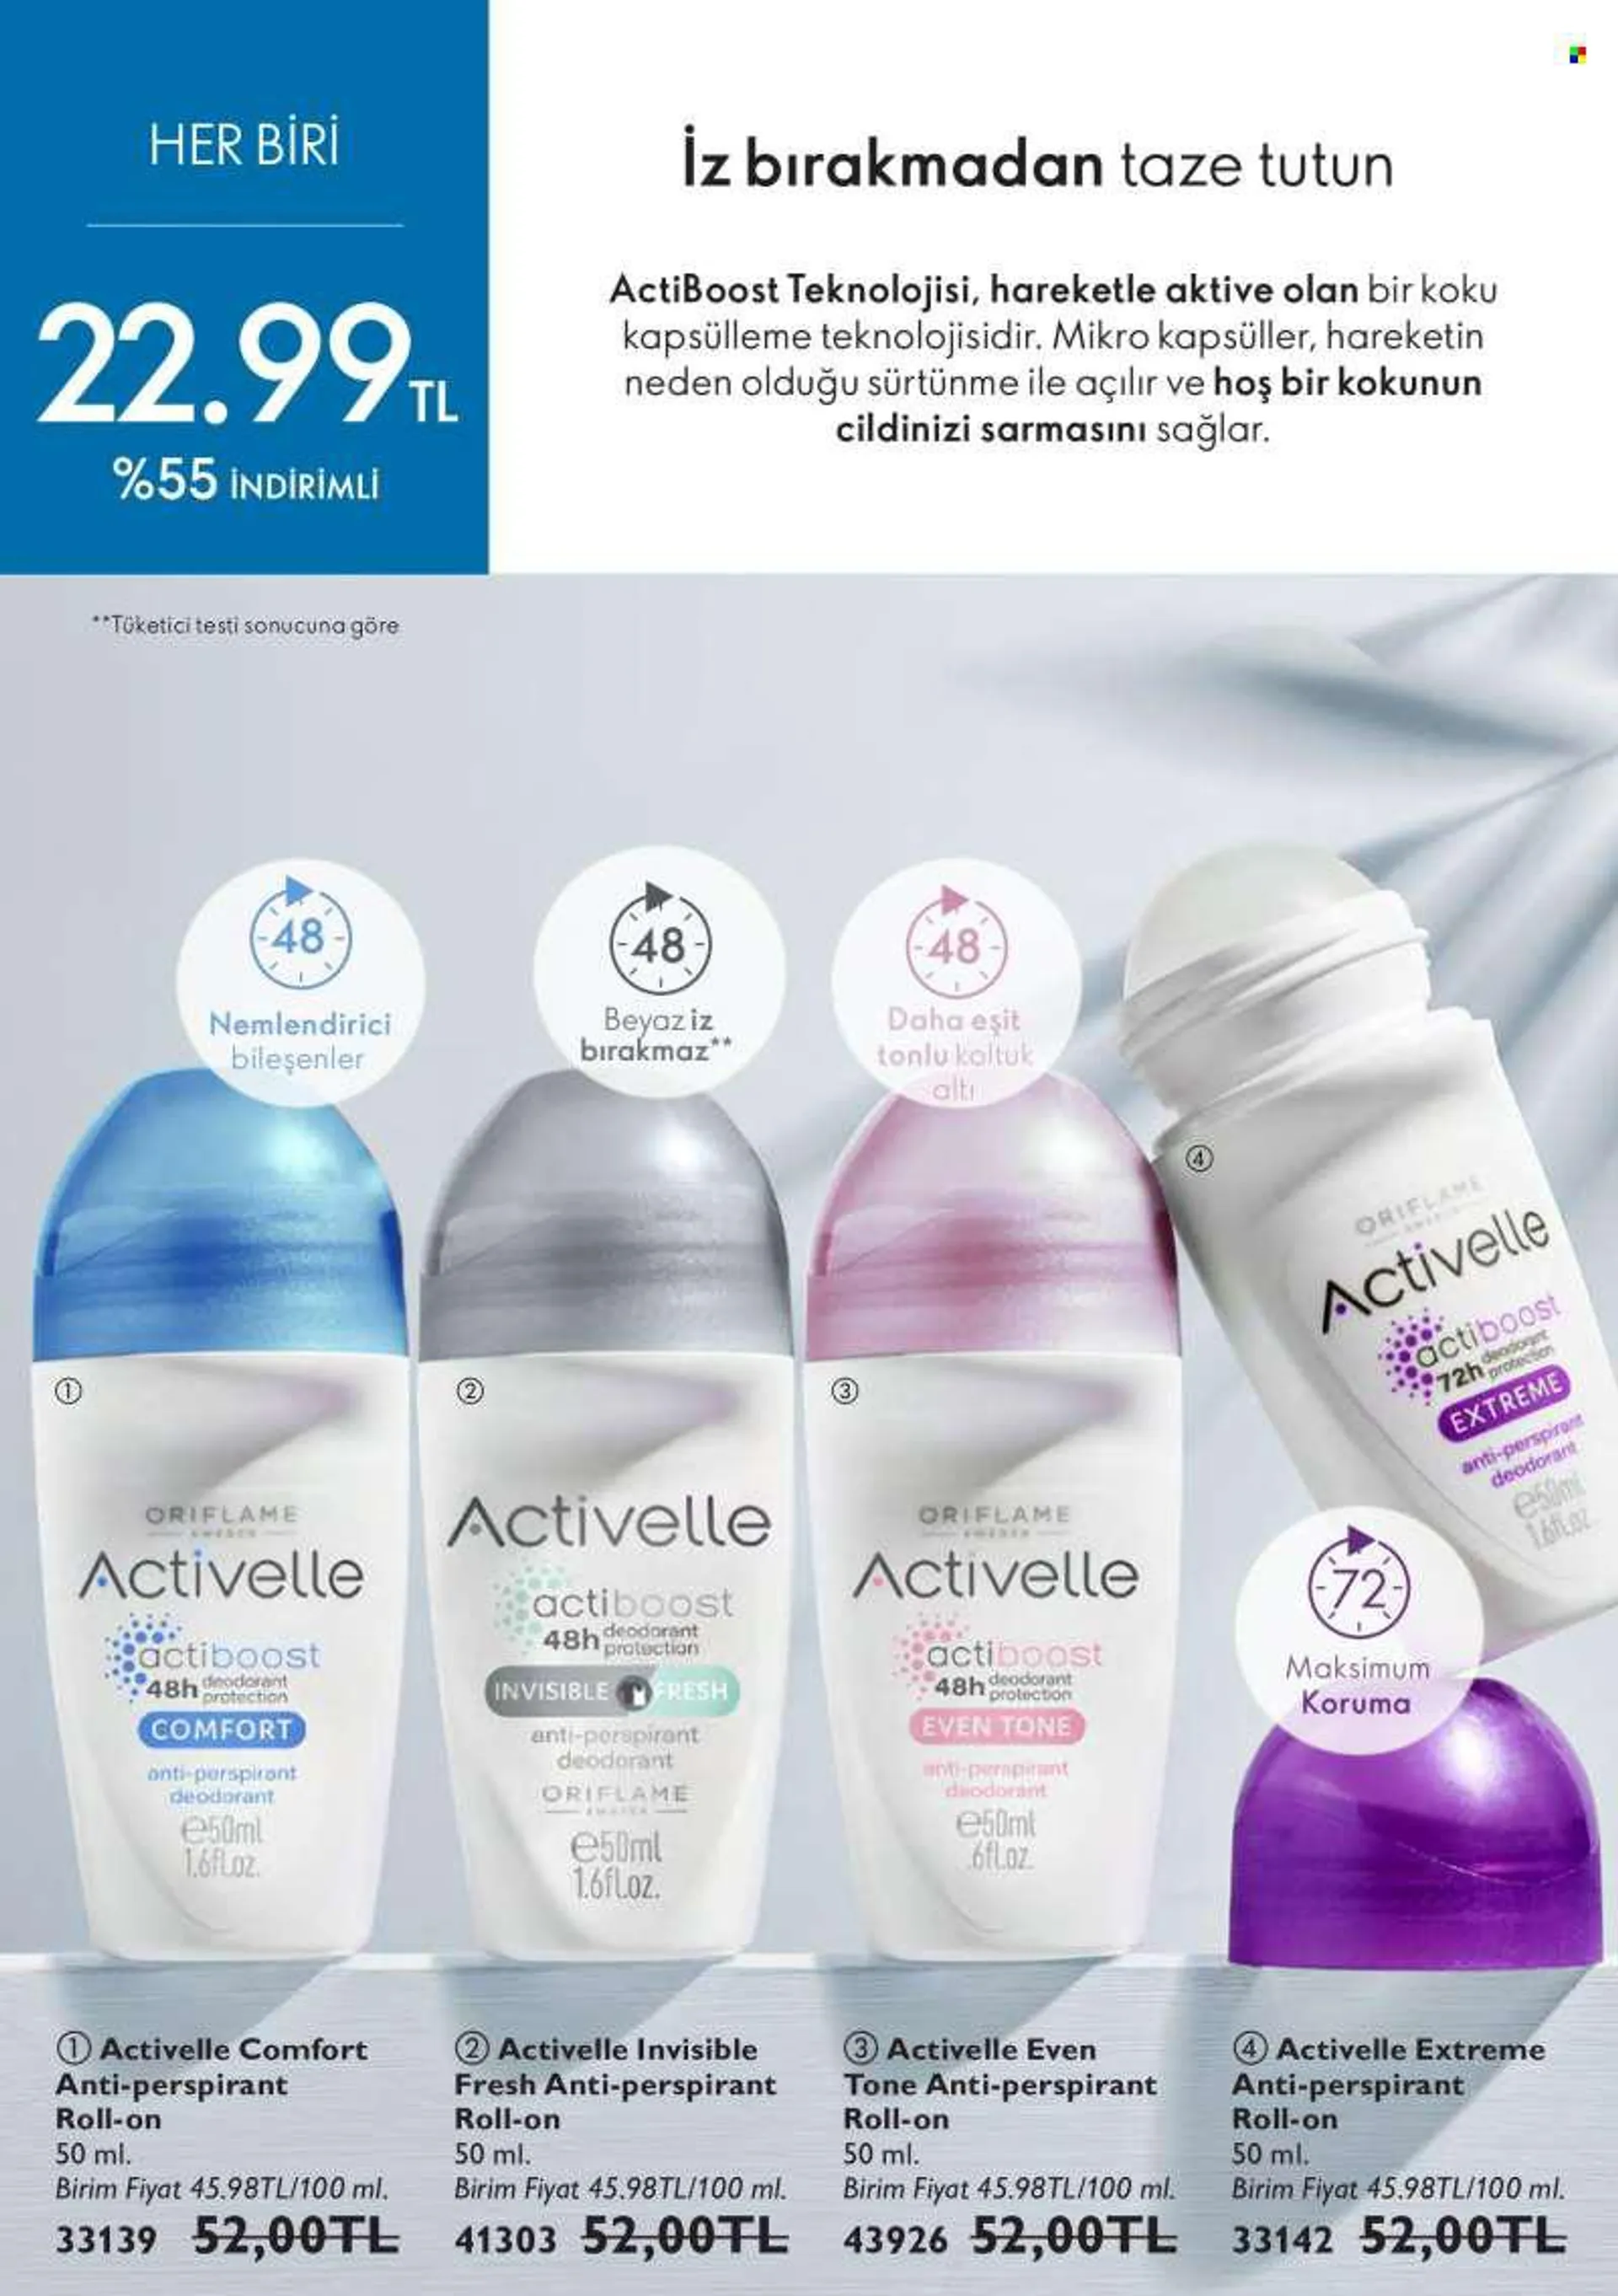 Oriflame aktüel ürünler, broşür  - 7.1.2022 - 7.31.2022 - Satıştaki ürünler - roll-on, nemlendirici, deodorant, anti-perspirant. Sayfa 124.